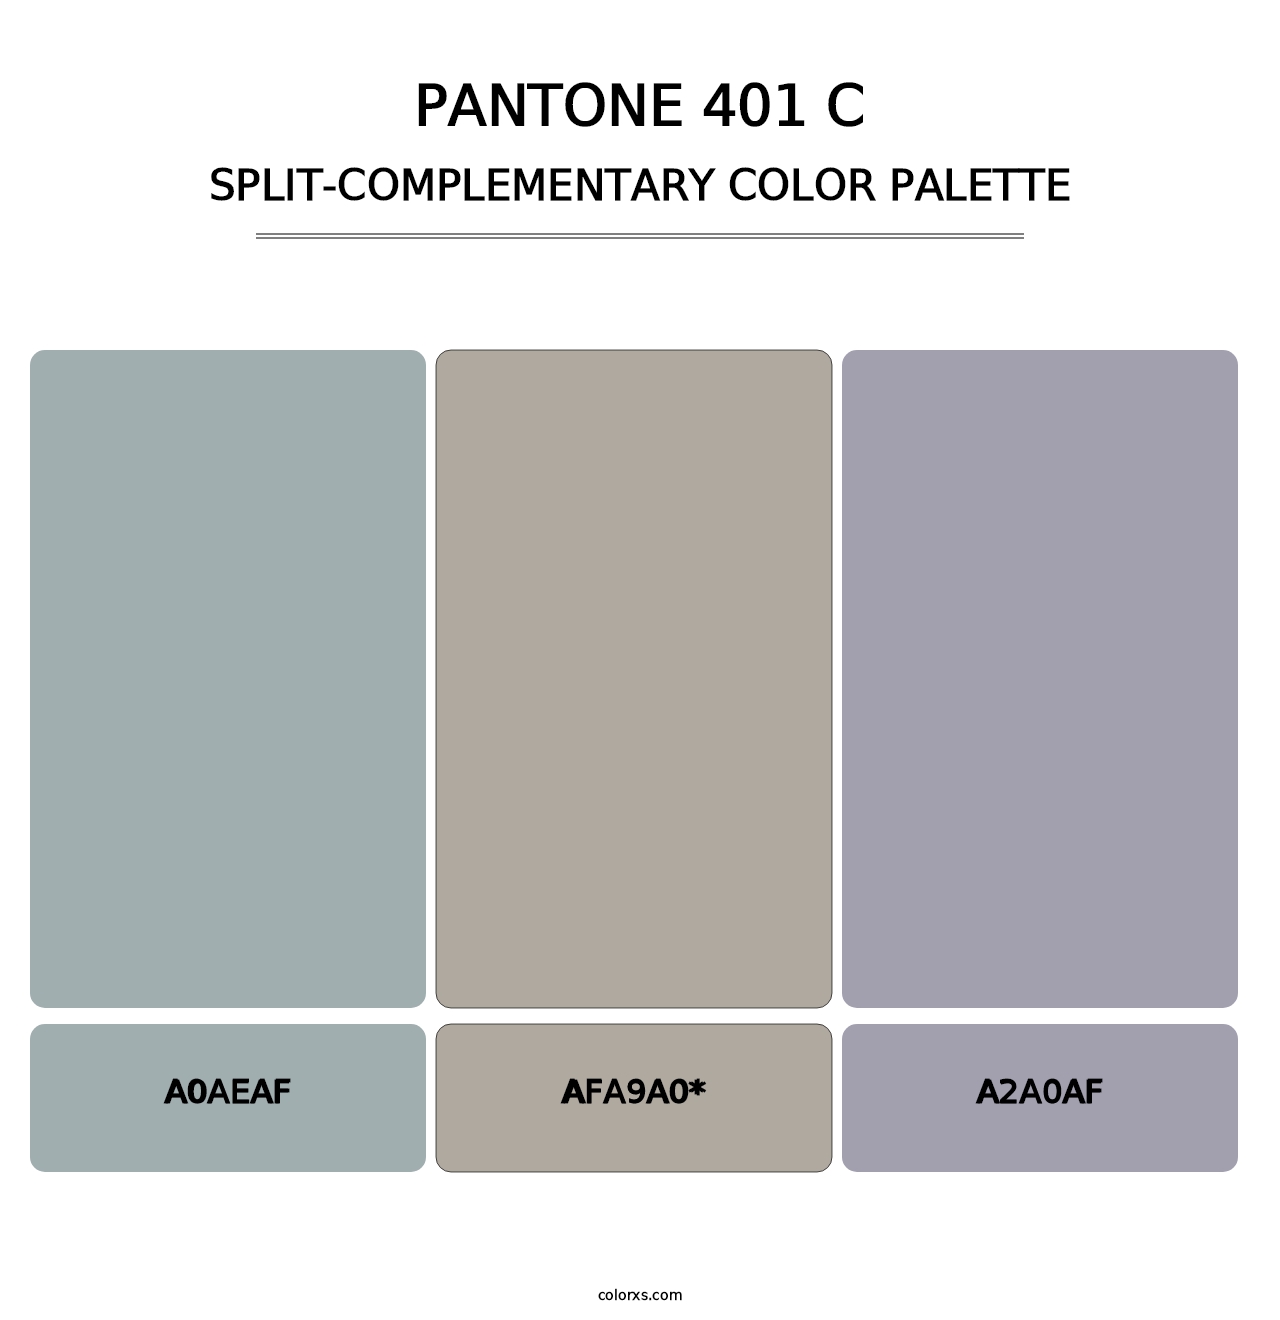 PANTONE 401 C - Split-Complementary Color Palette